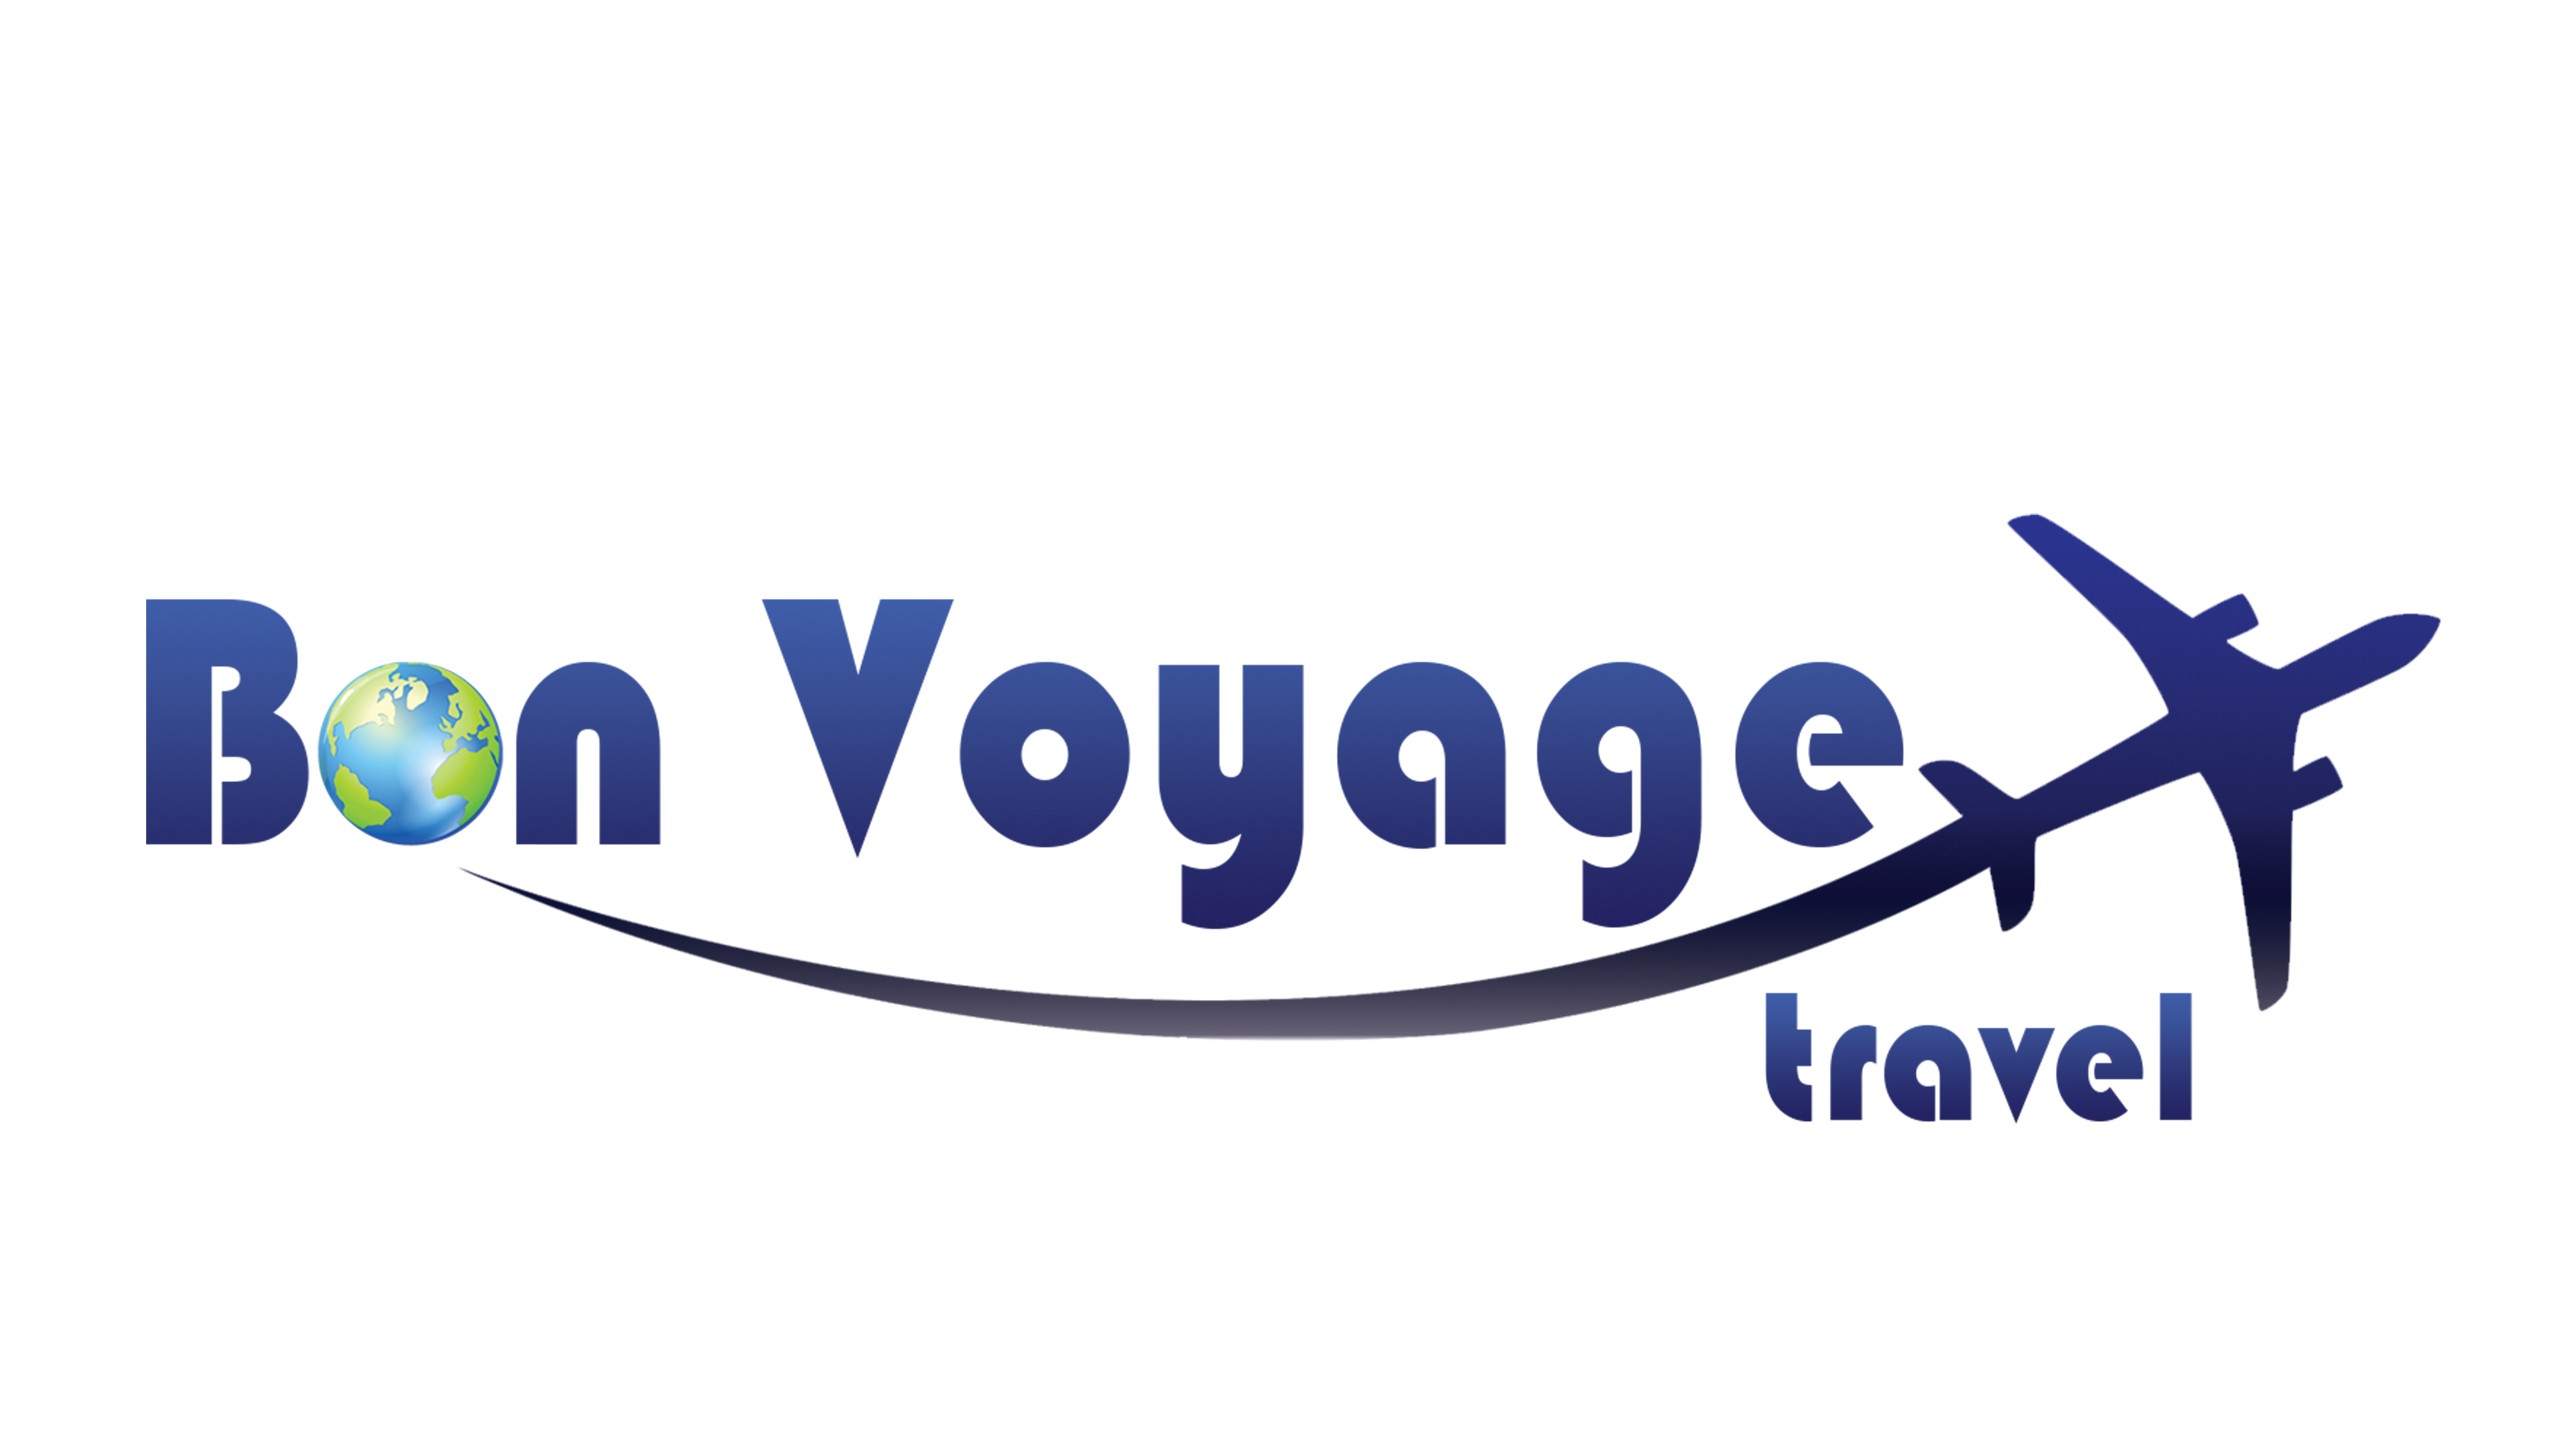 voyage travel llc